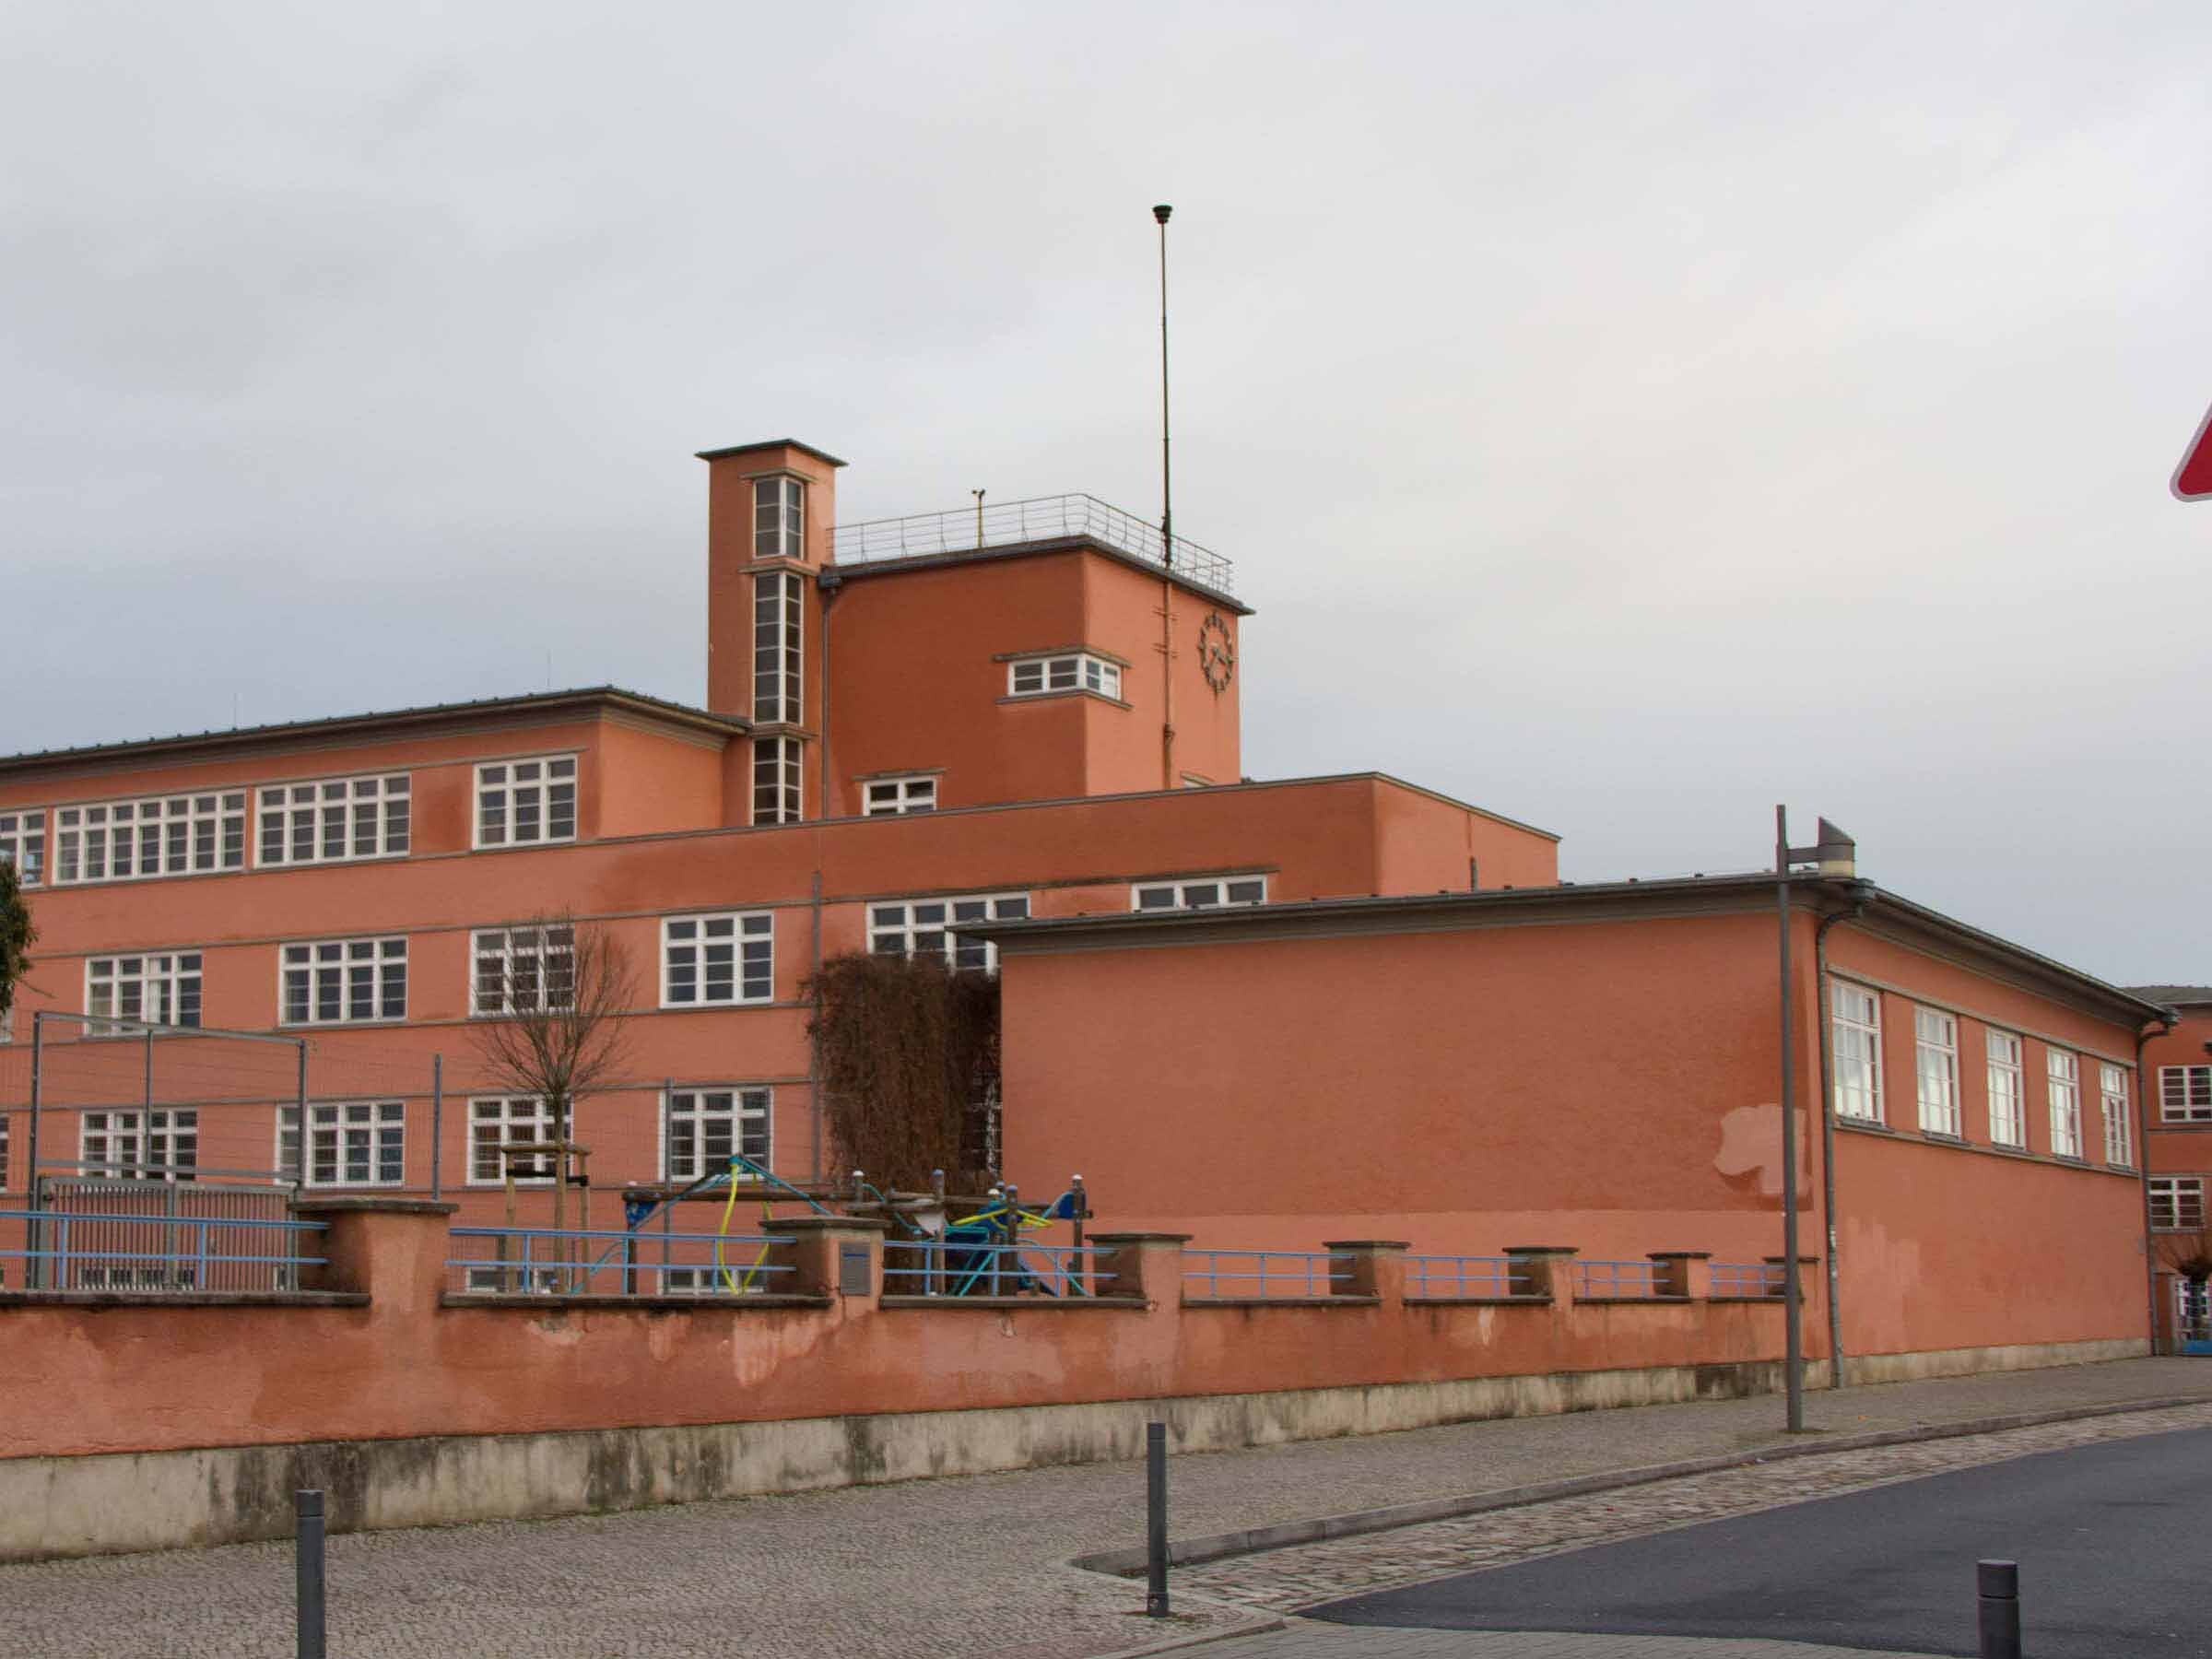 20-er-Jahre-Architektur in Luckenwalde: Schule